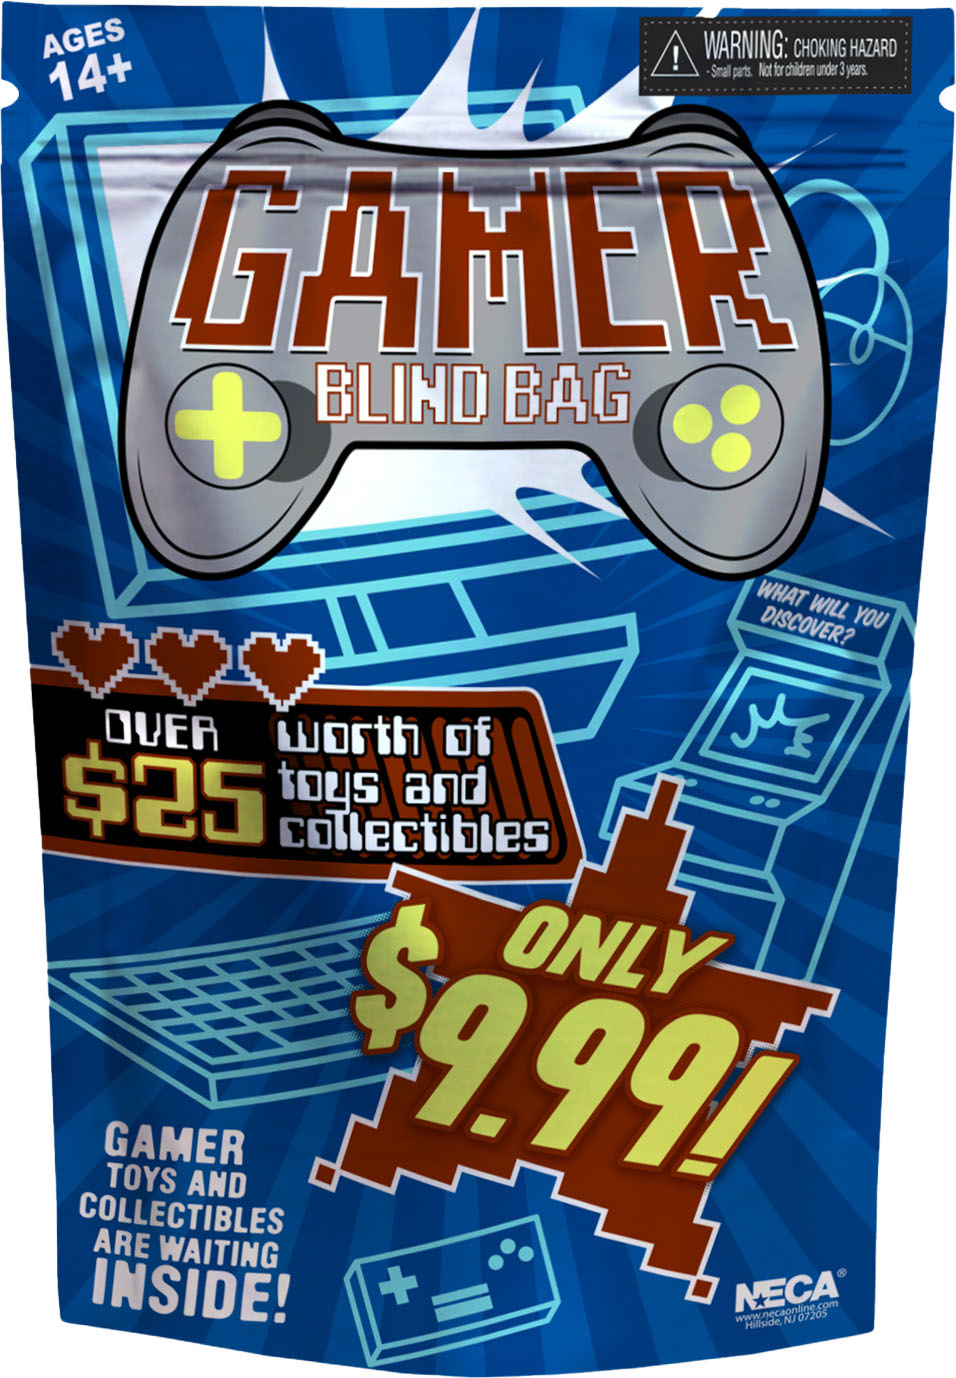 NECA - Gamer Blind Bag